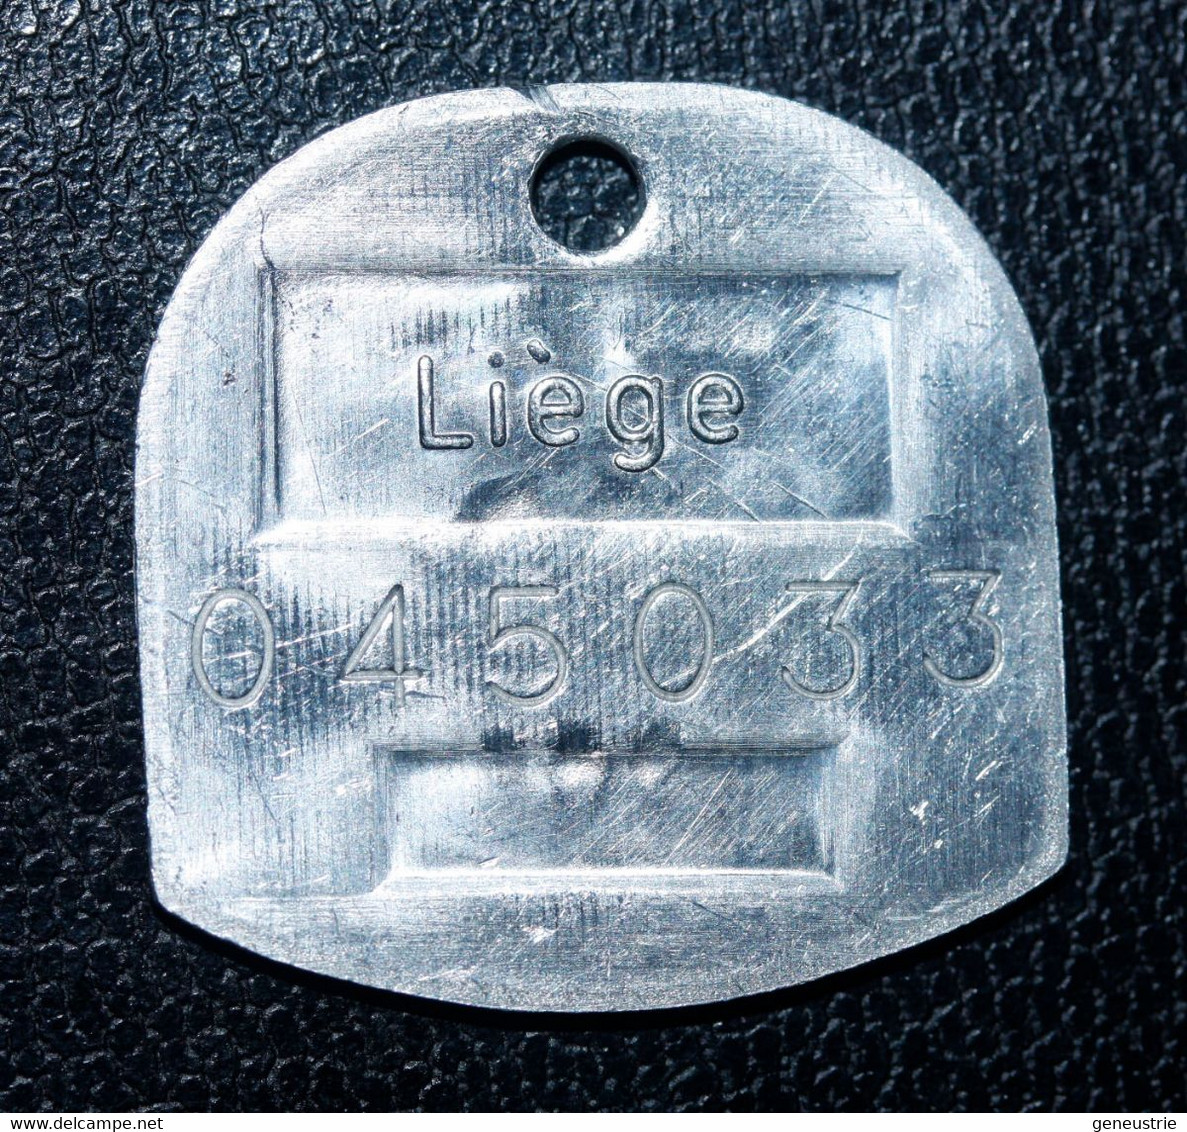 Jeton De Taxe Sur Les Chiens "Année 1986 - Liège (Luik) - Belgique / Belgie" Médaille De Chien - Dog License Tax Tag - Monétaires / De Nécessité